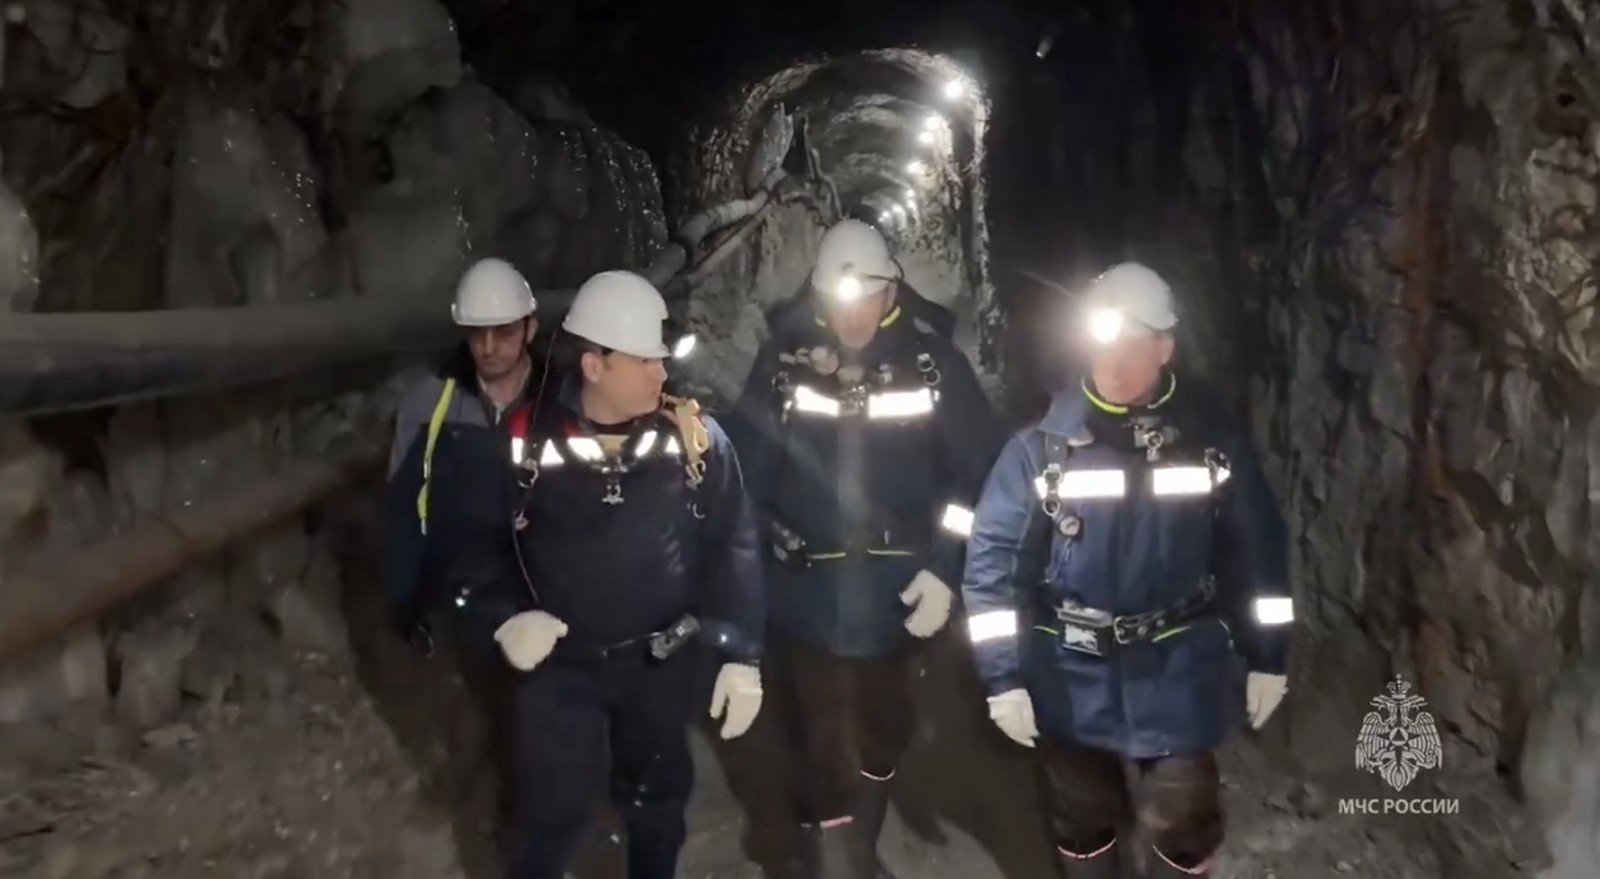 Ρωσία: Σχεδόν ολοκληρωτικά έχει πλημμυρίσει το χρυσωρυχείο όπου είναι εγκλωβισμένοι 13 εργάτες